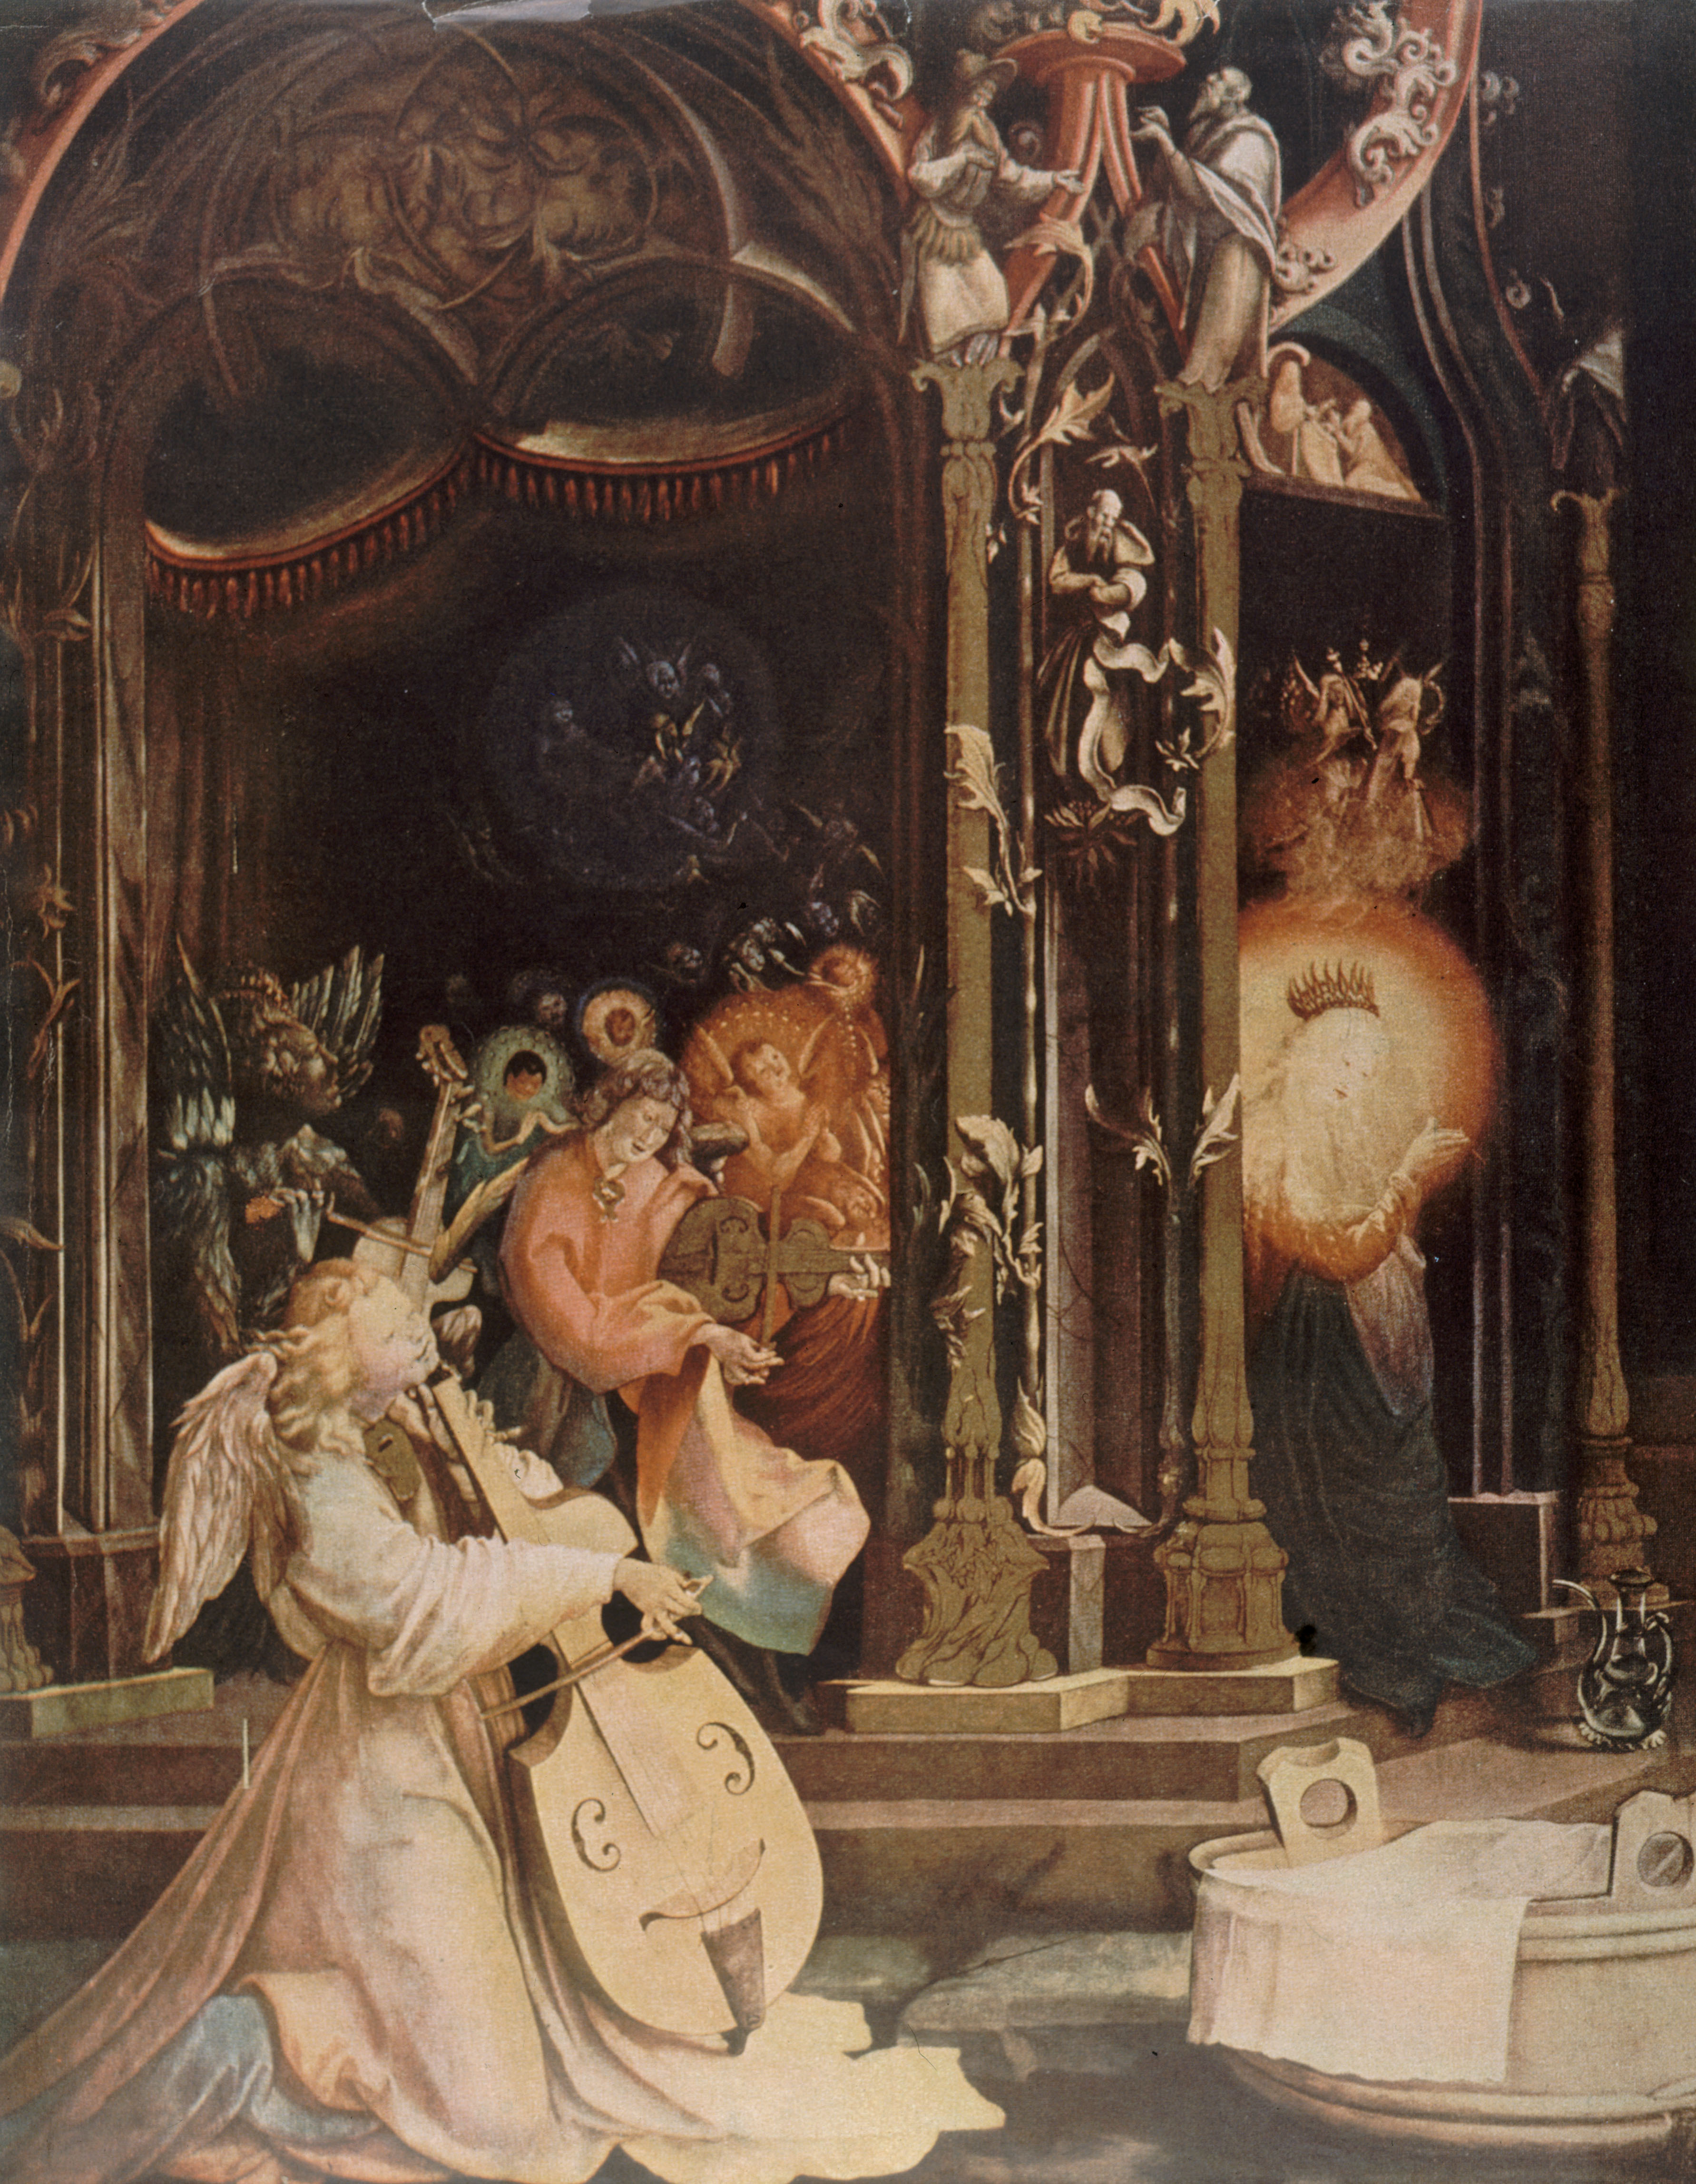 Natività, Il coro degli angeli (Altare di Issenheim), Matthias Grünewald, 1511-1516 circa, olio su tavola, 265x304 cm. Musée d'Unterlinden, Colmar. Credito: Roger-Viollet/contrasto